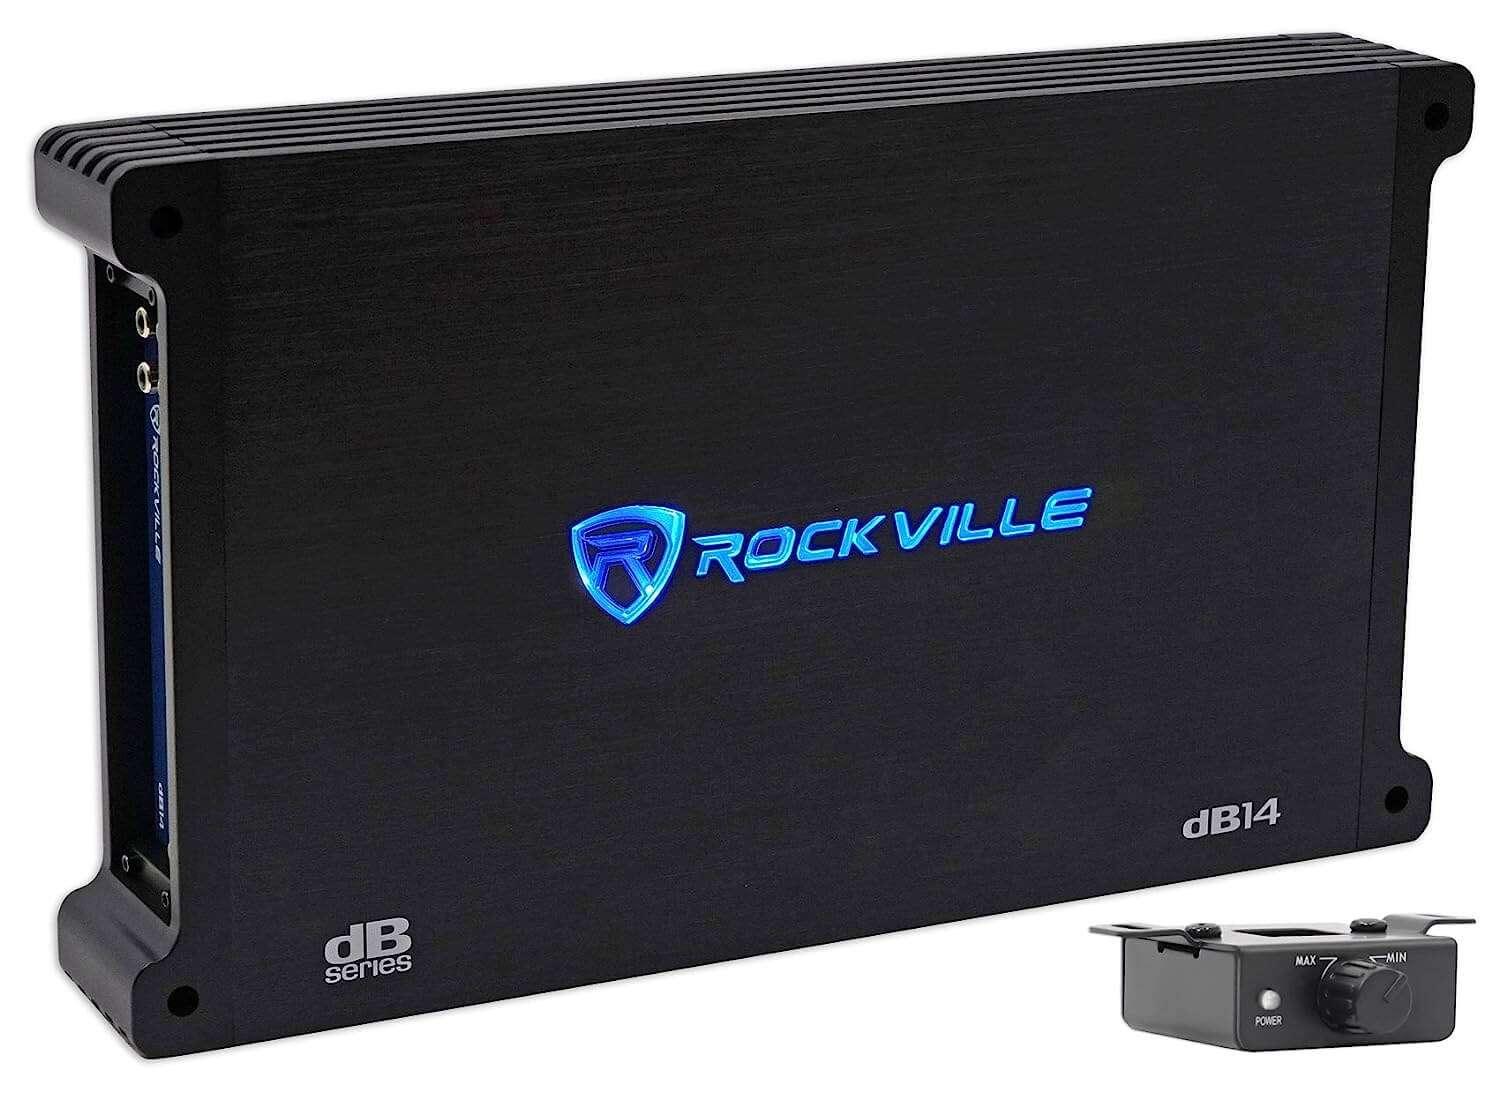 Rockville dB14 - Best Bass Car Amplifier